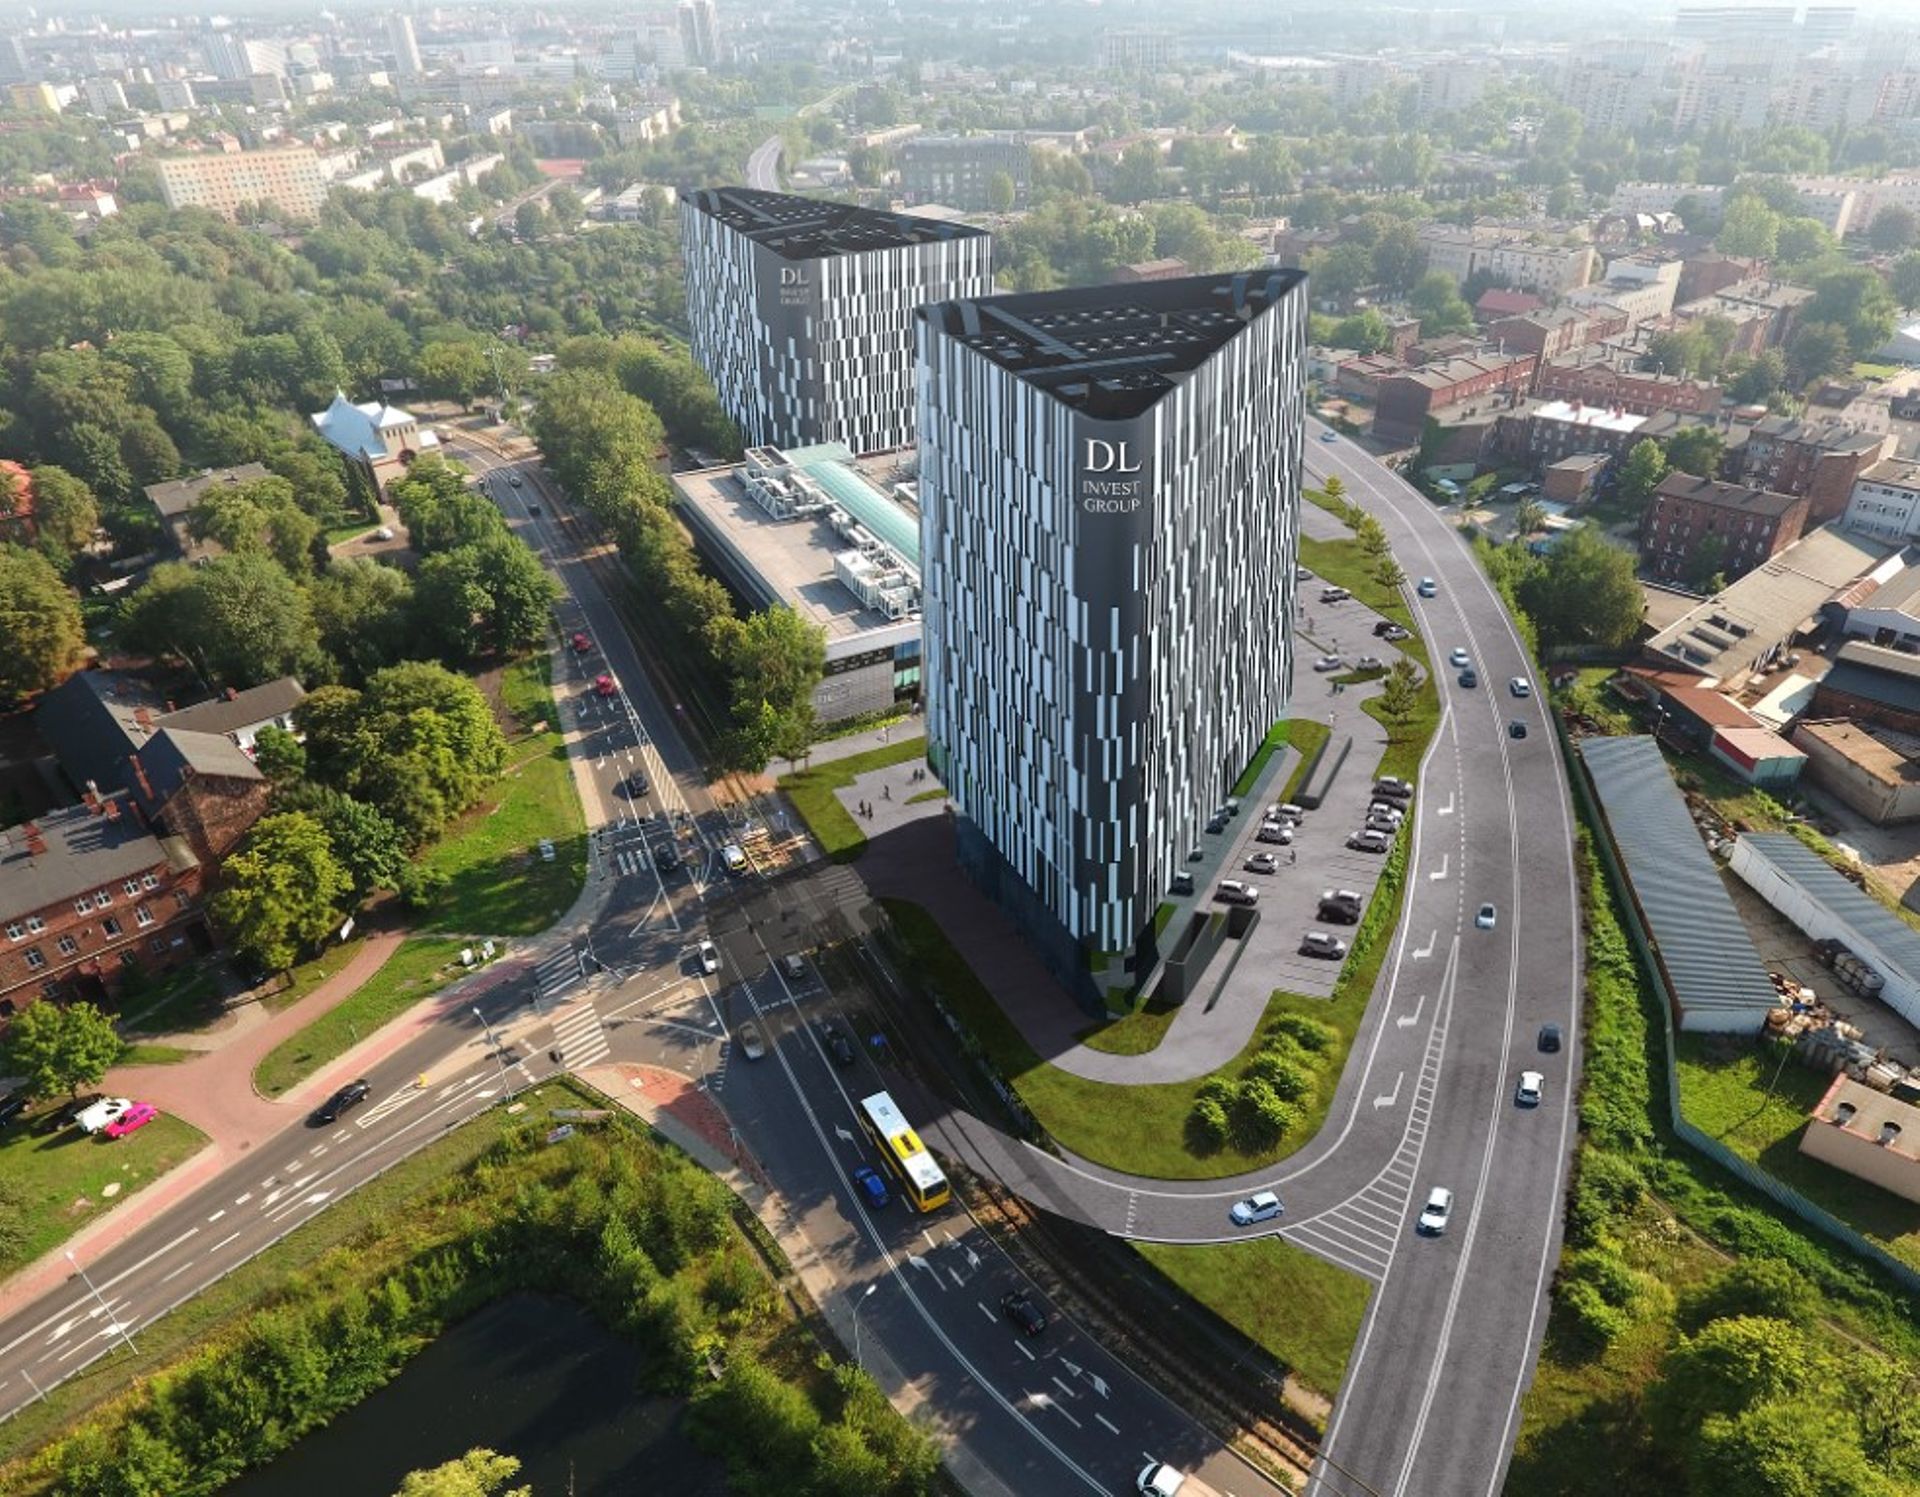 Trójkątny biurowiec DL Tower powstaje w Katowicach